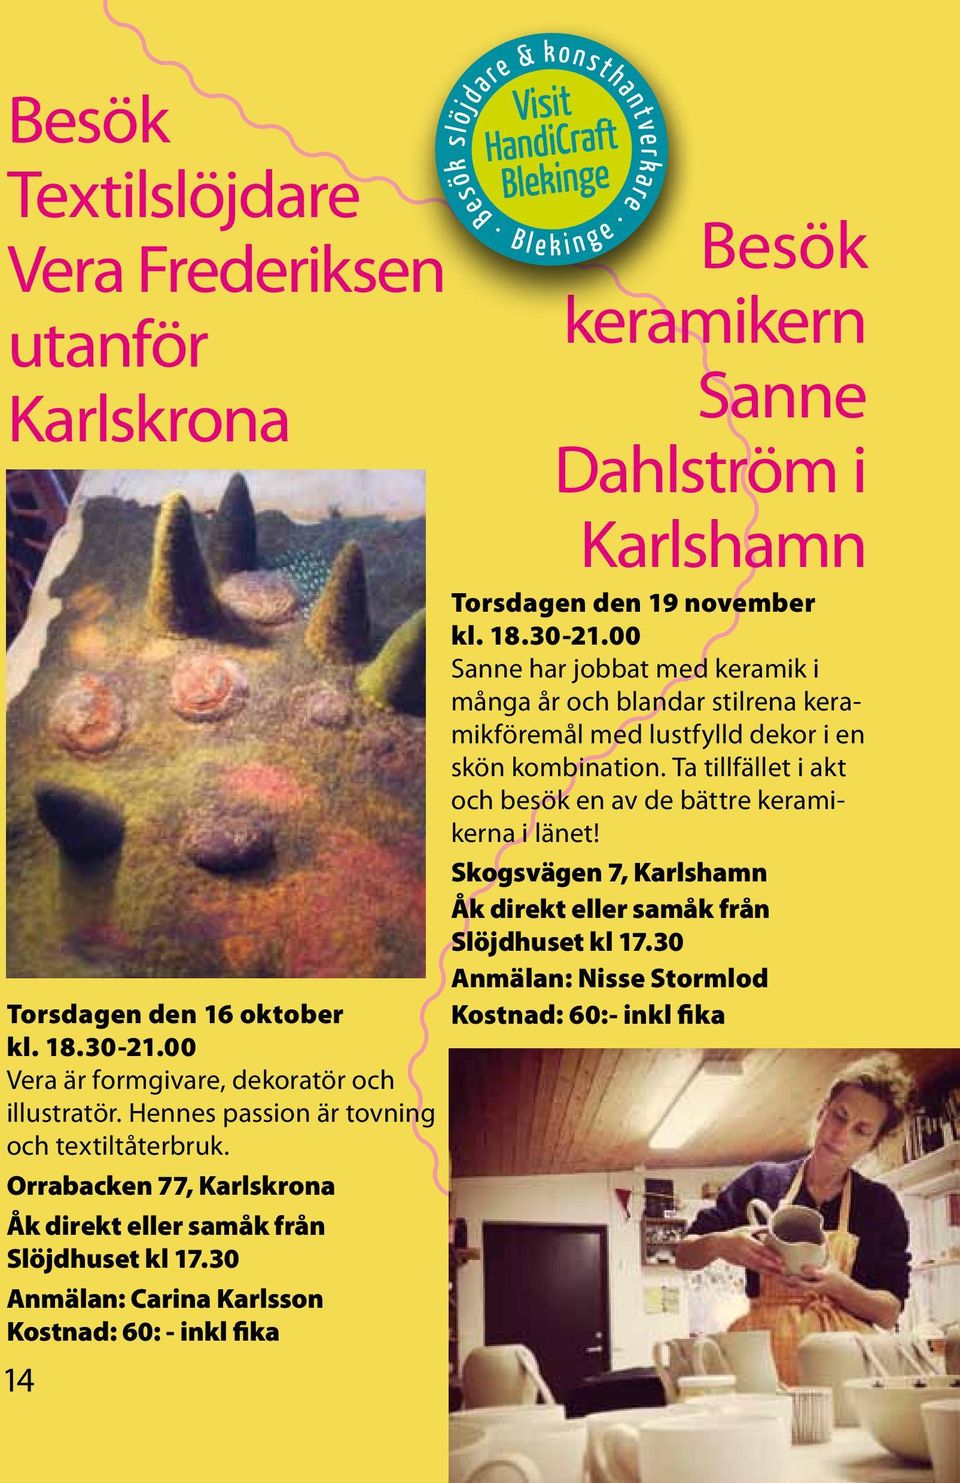 30 Anmälan: Carina Karlsson Kostnad: 60: - inkl fika 14 Besök keramikern Sanne Dahlström i Karlshamn Torsdagen den 19 november kl. 18.30-21.